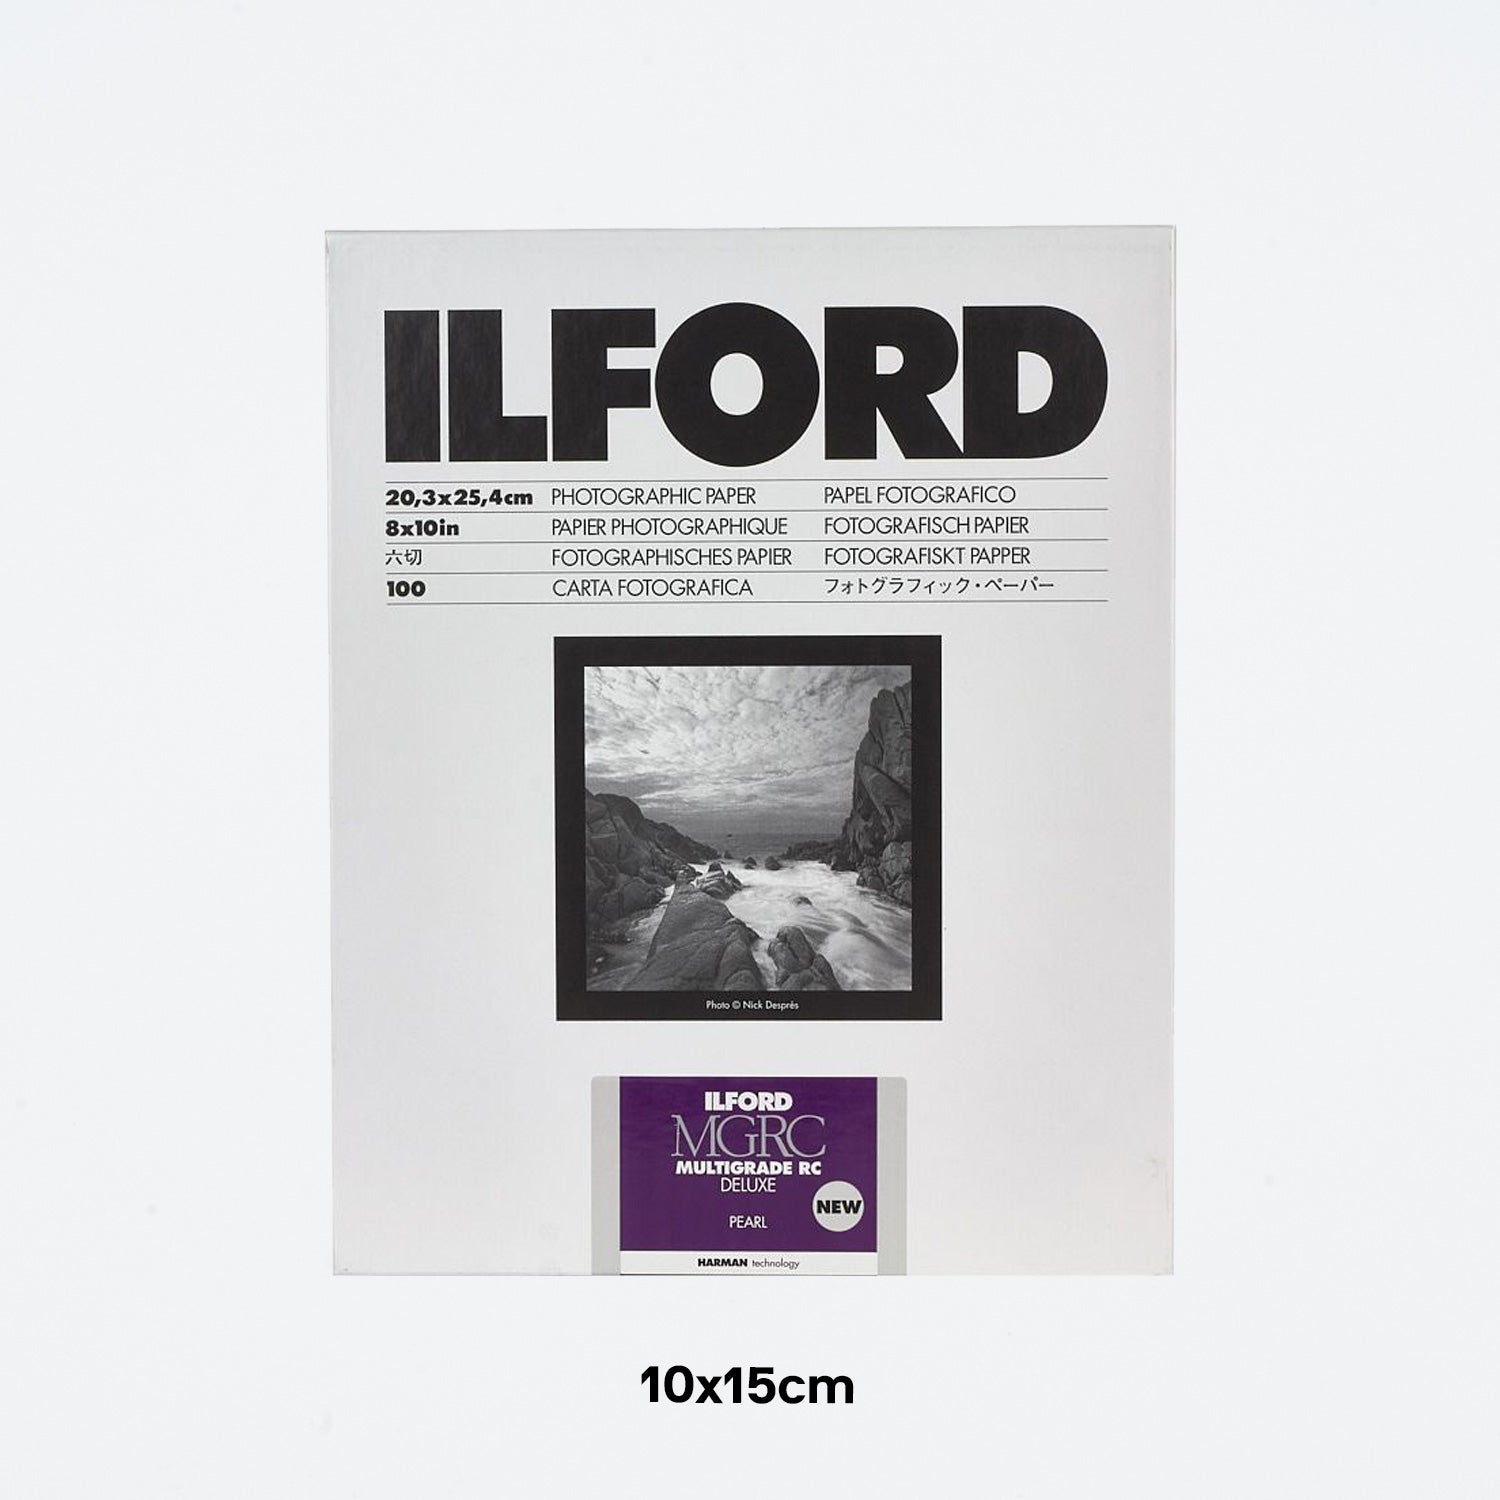 ILFORD Multigrade RC Deluxe pearl Schwarzweiß-Fotopapier 10x15cm 100 Blatt